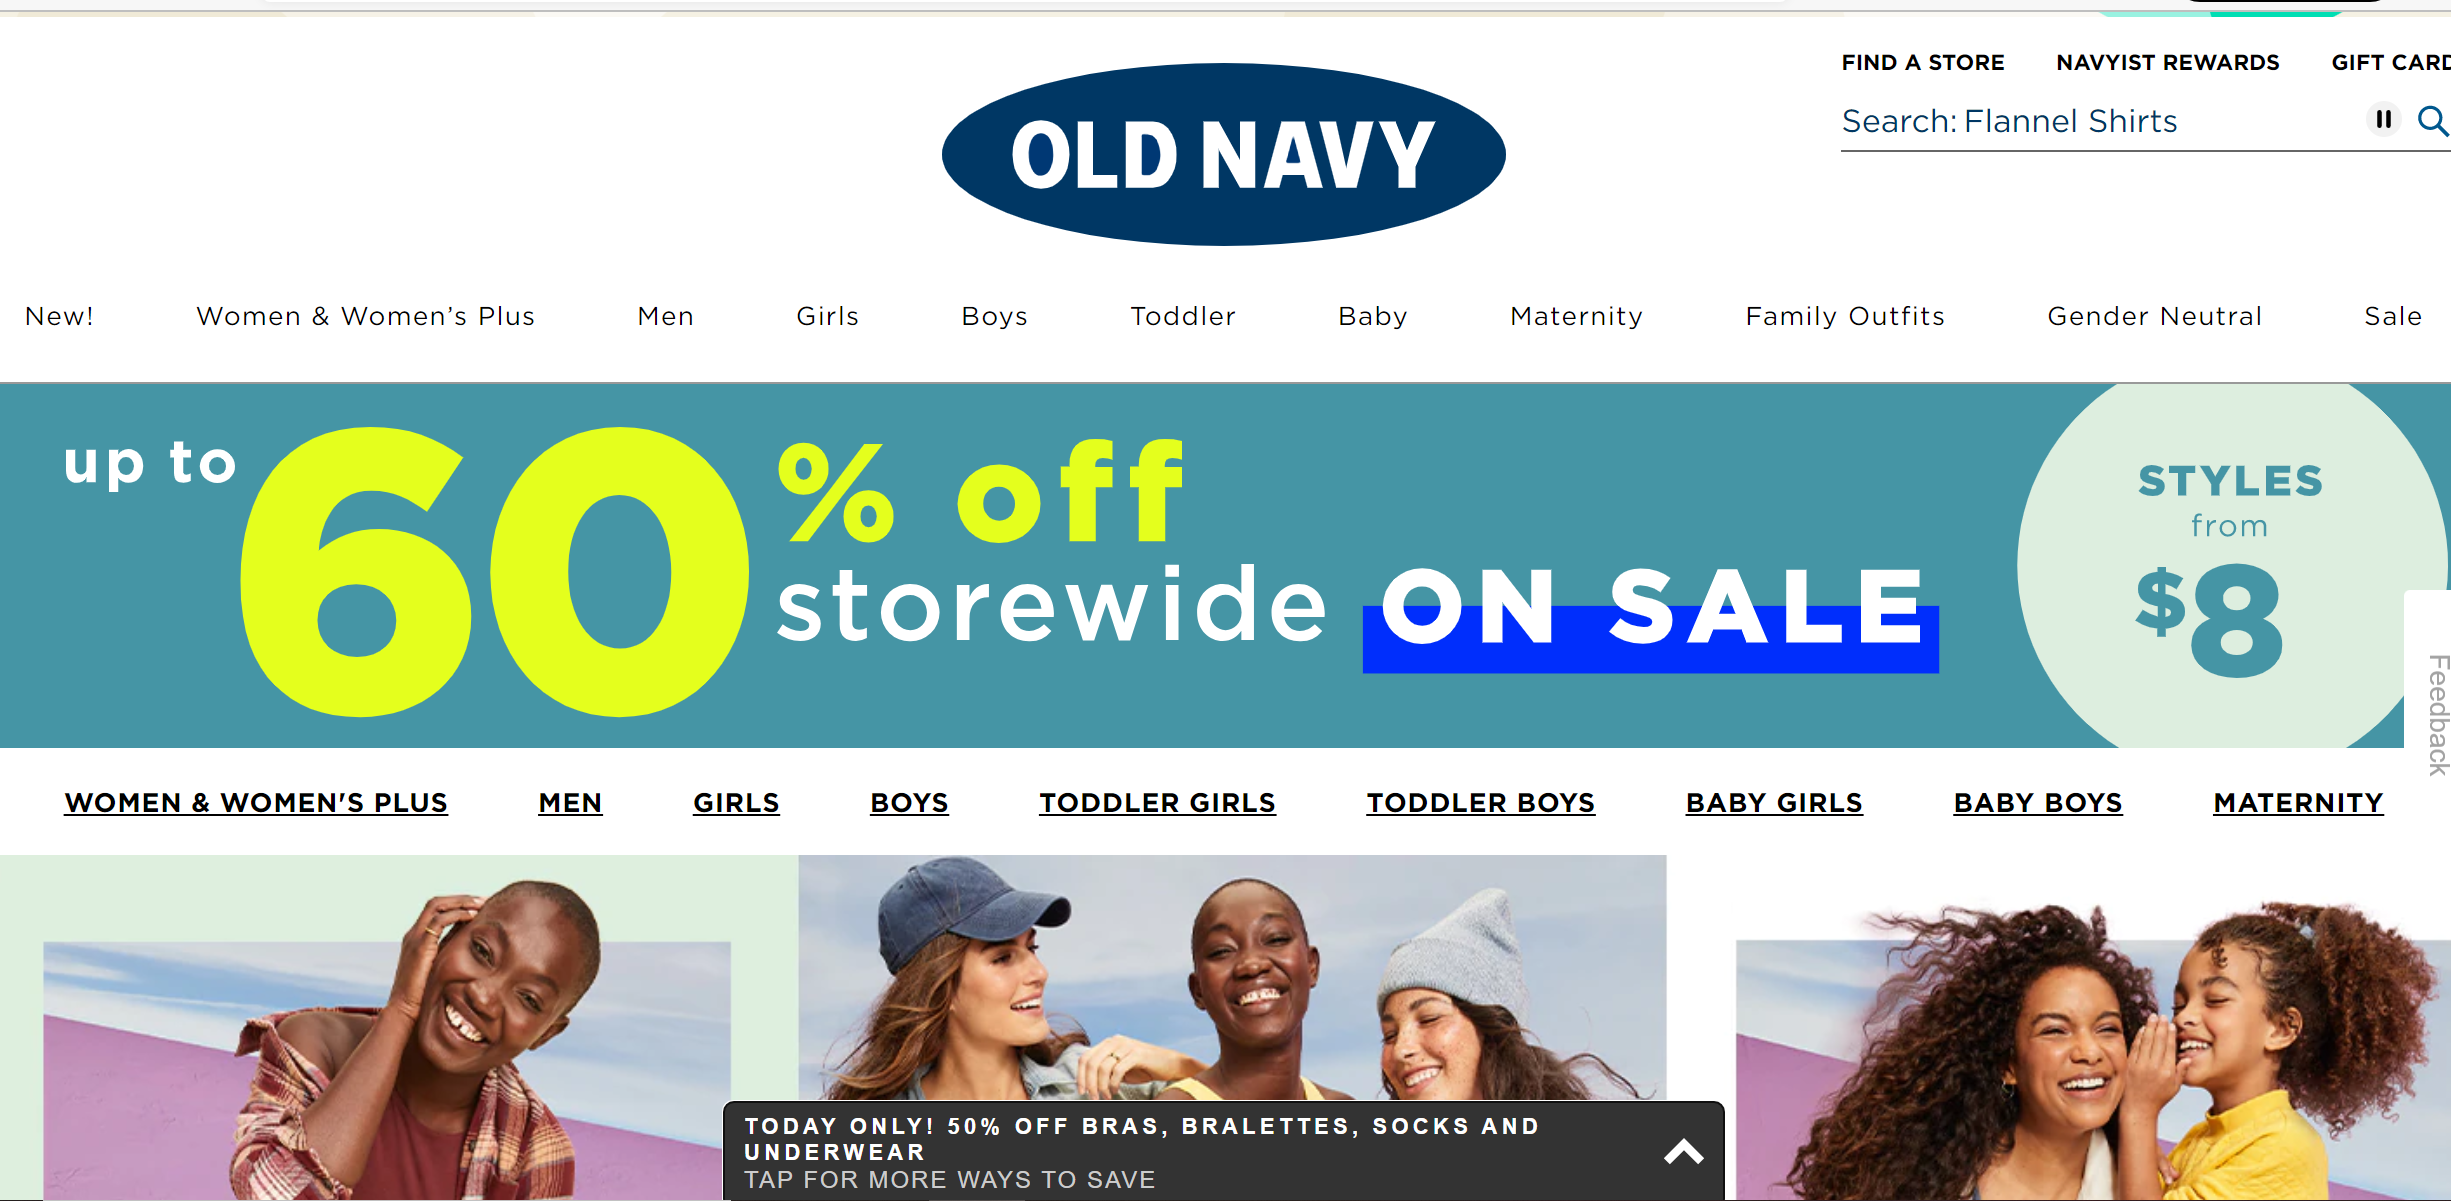 ecommerce_merchandising_old_navy